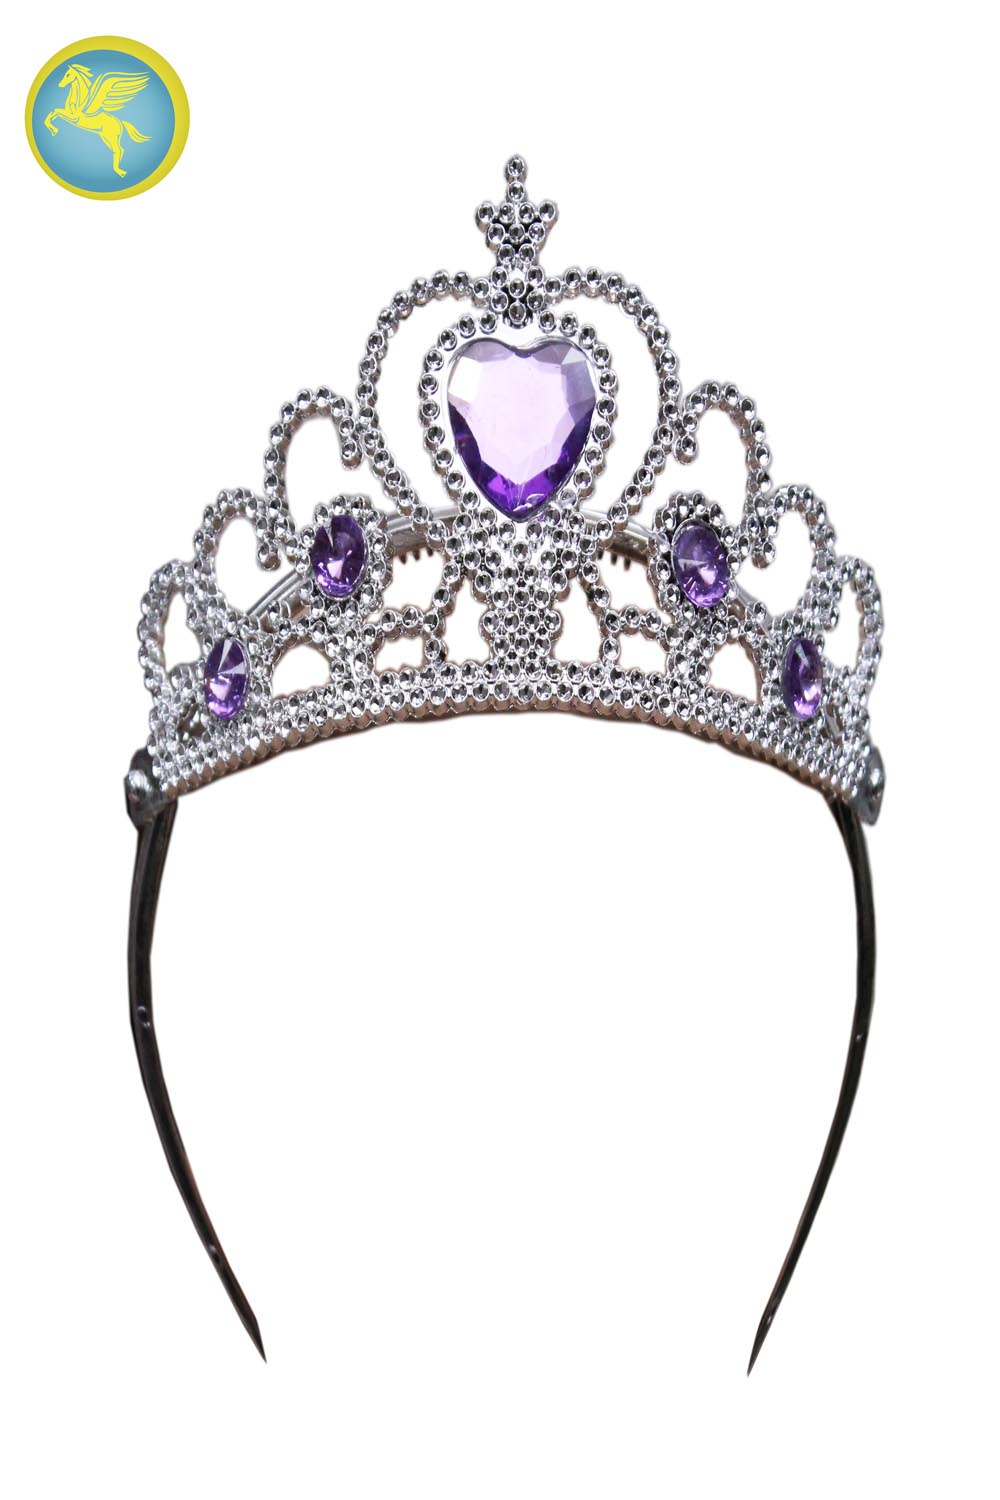 Corona principessa lilla